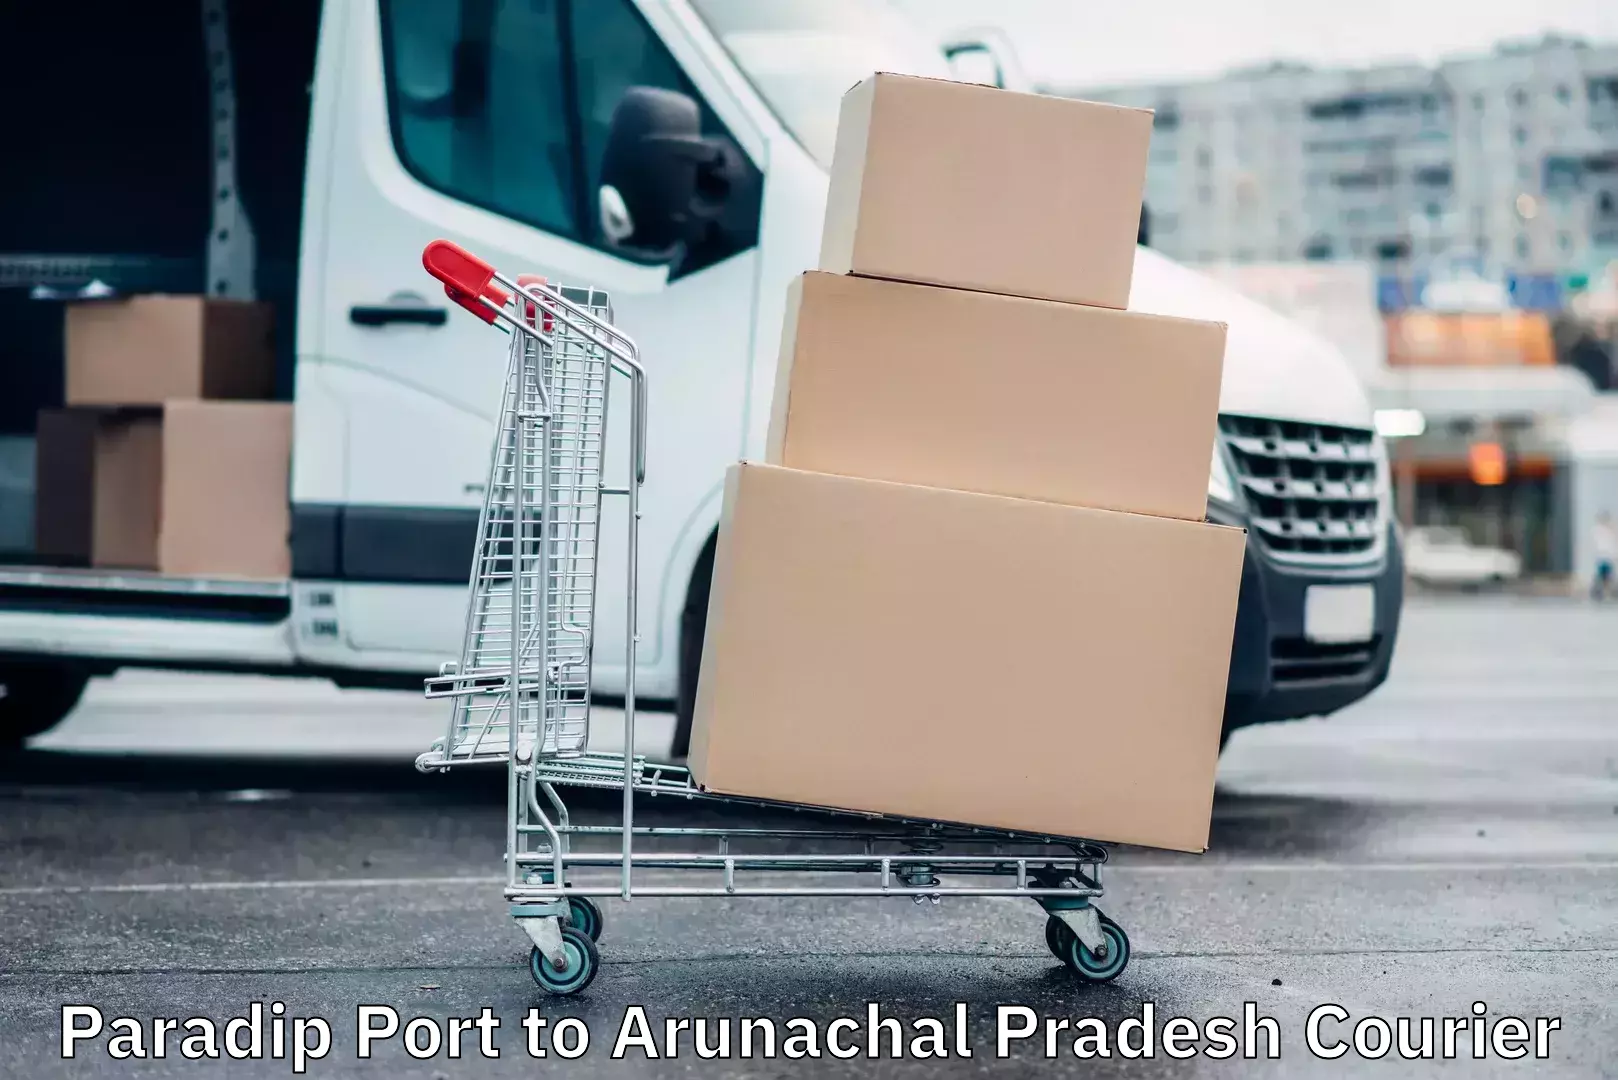 Efficient freight service Paradip Port to Arunachal Pradesh